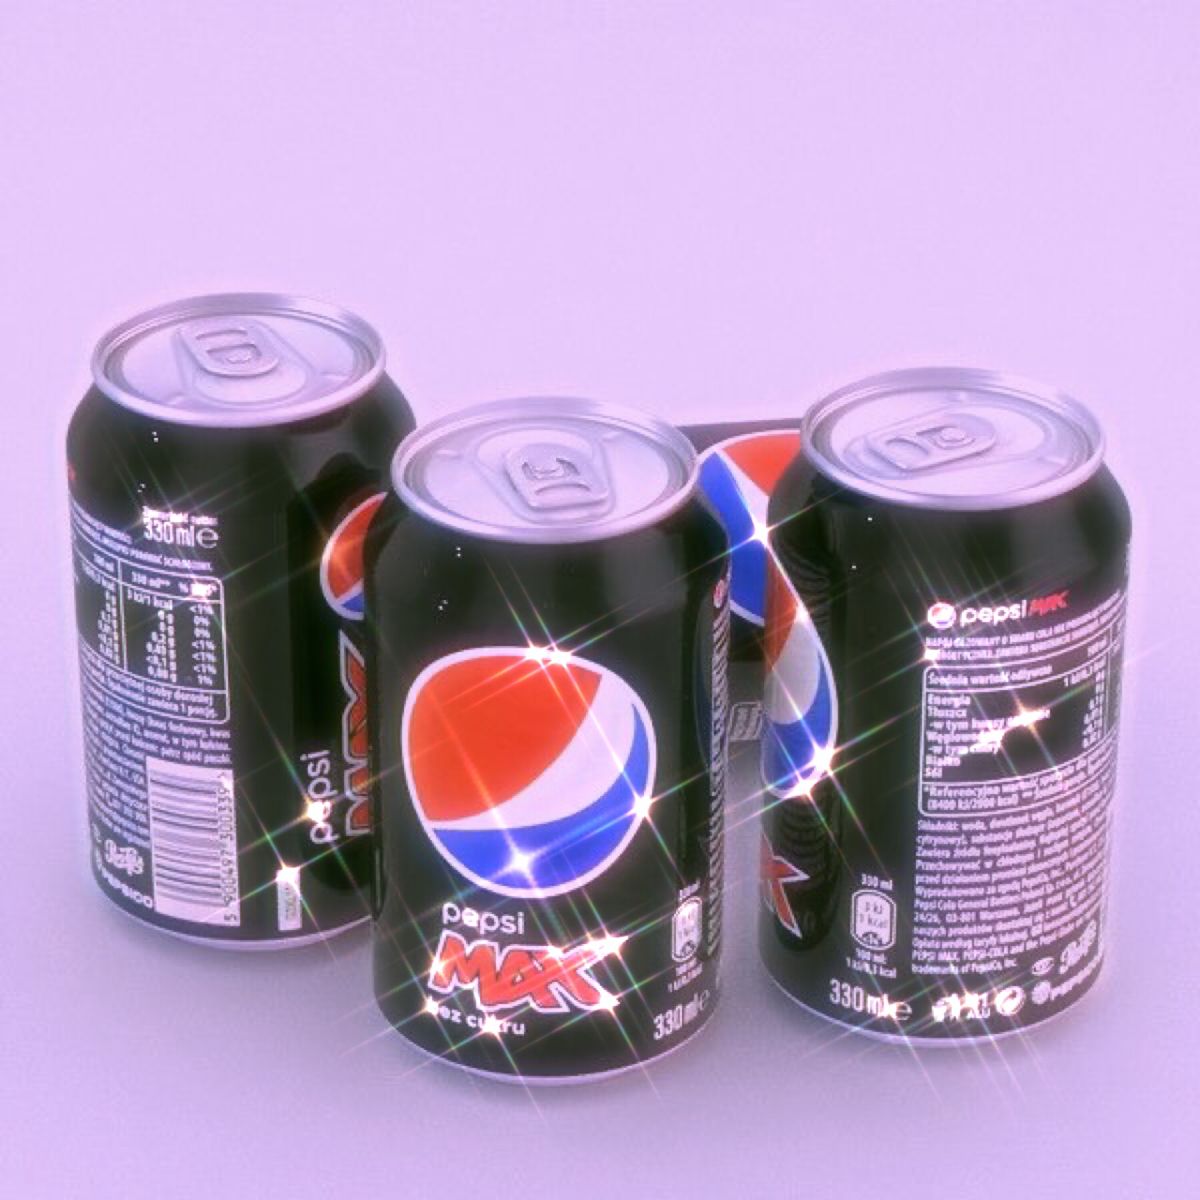 Pepsi Max Aesthetic